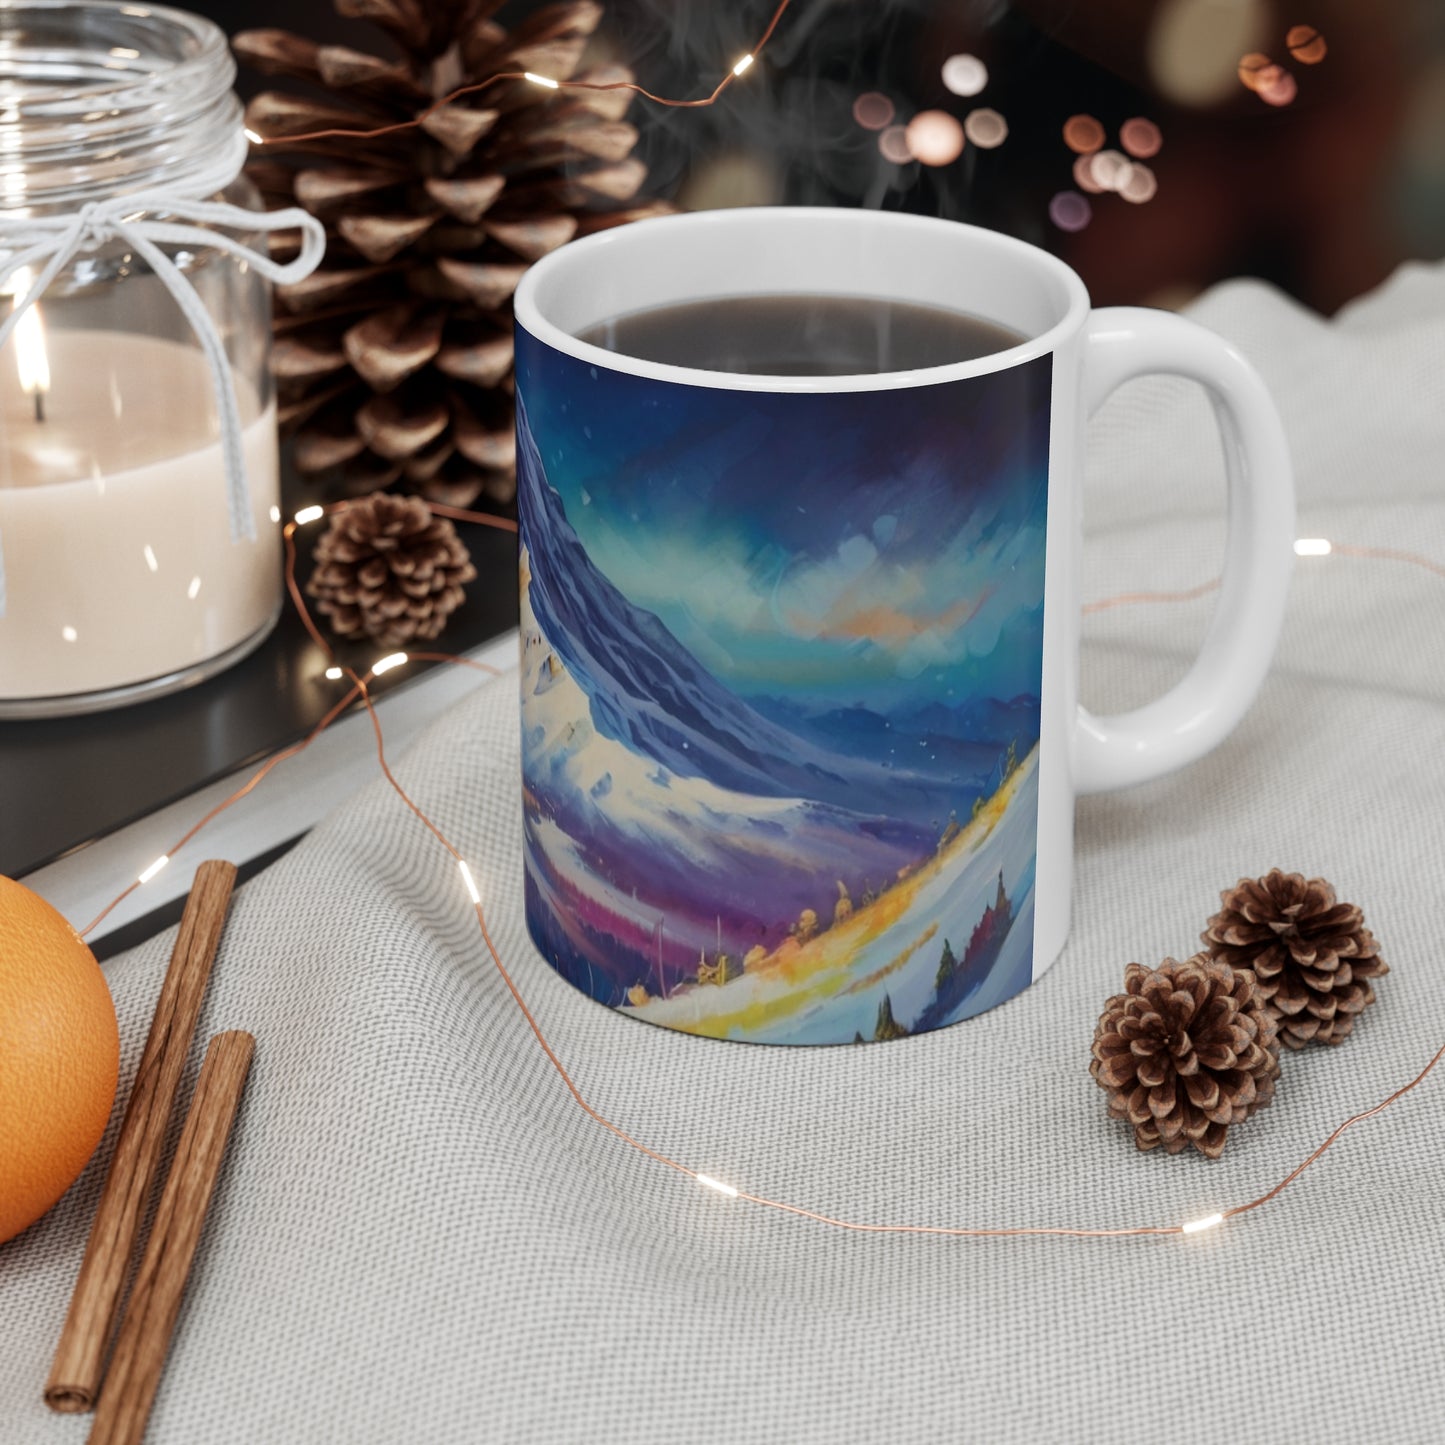 Snowy Mountain Mug - Ceramic Coffee Mug 11oz